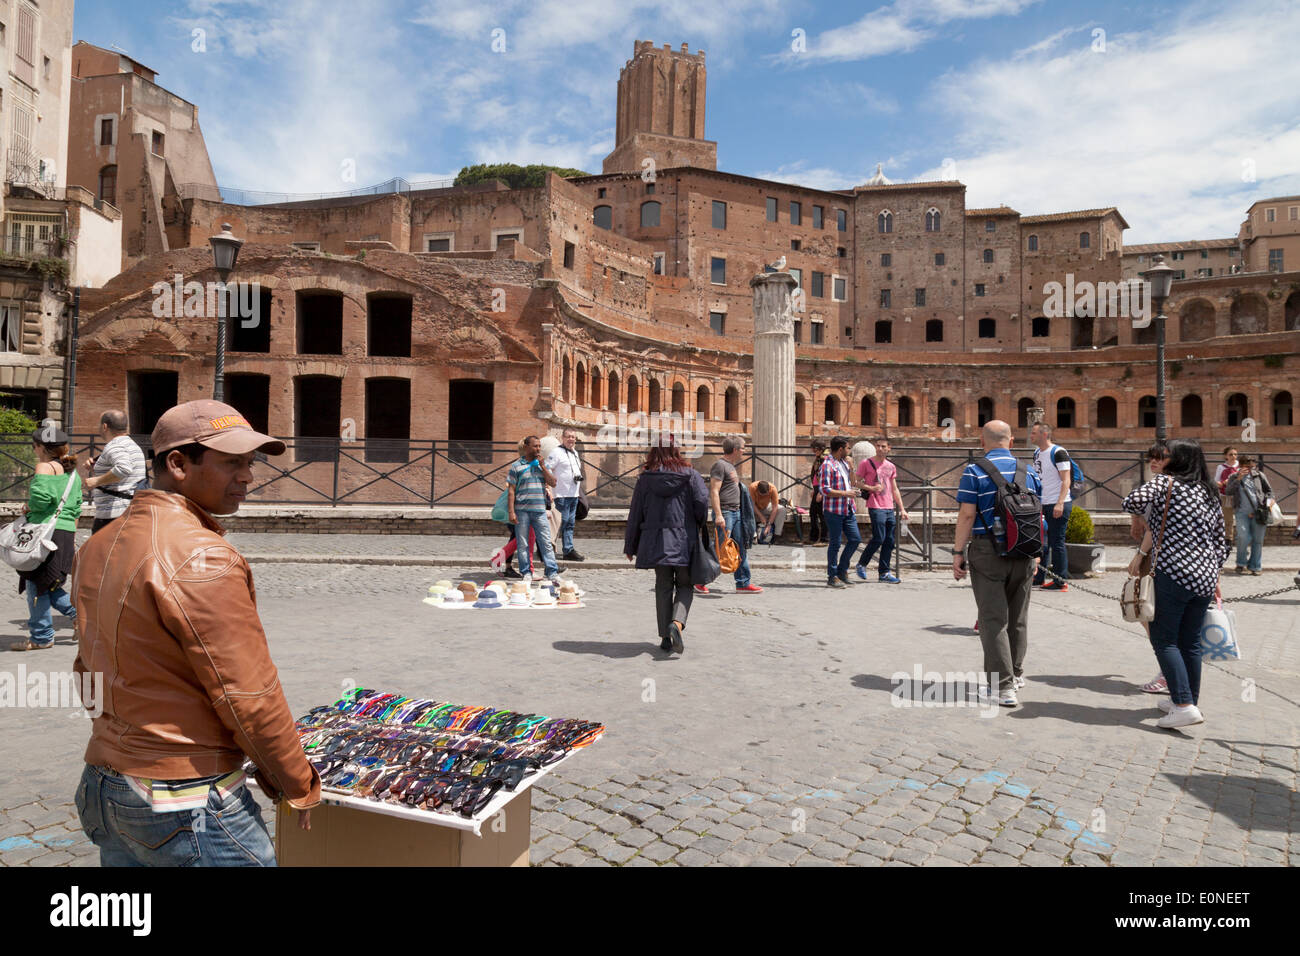 Straßenszene, Stadtzentrum von Rom, das Forum, Rom Italien Europa Stockfoto